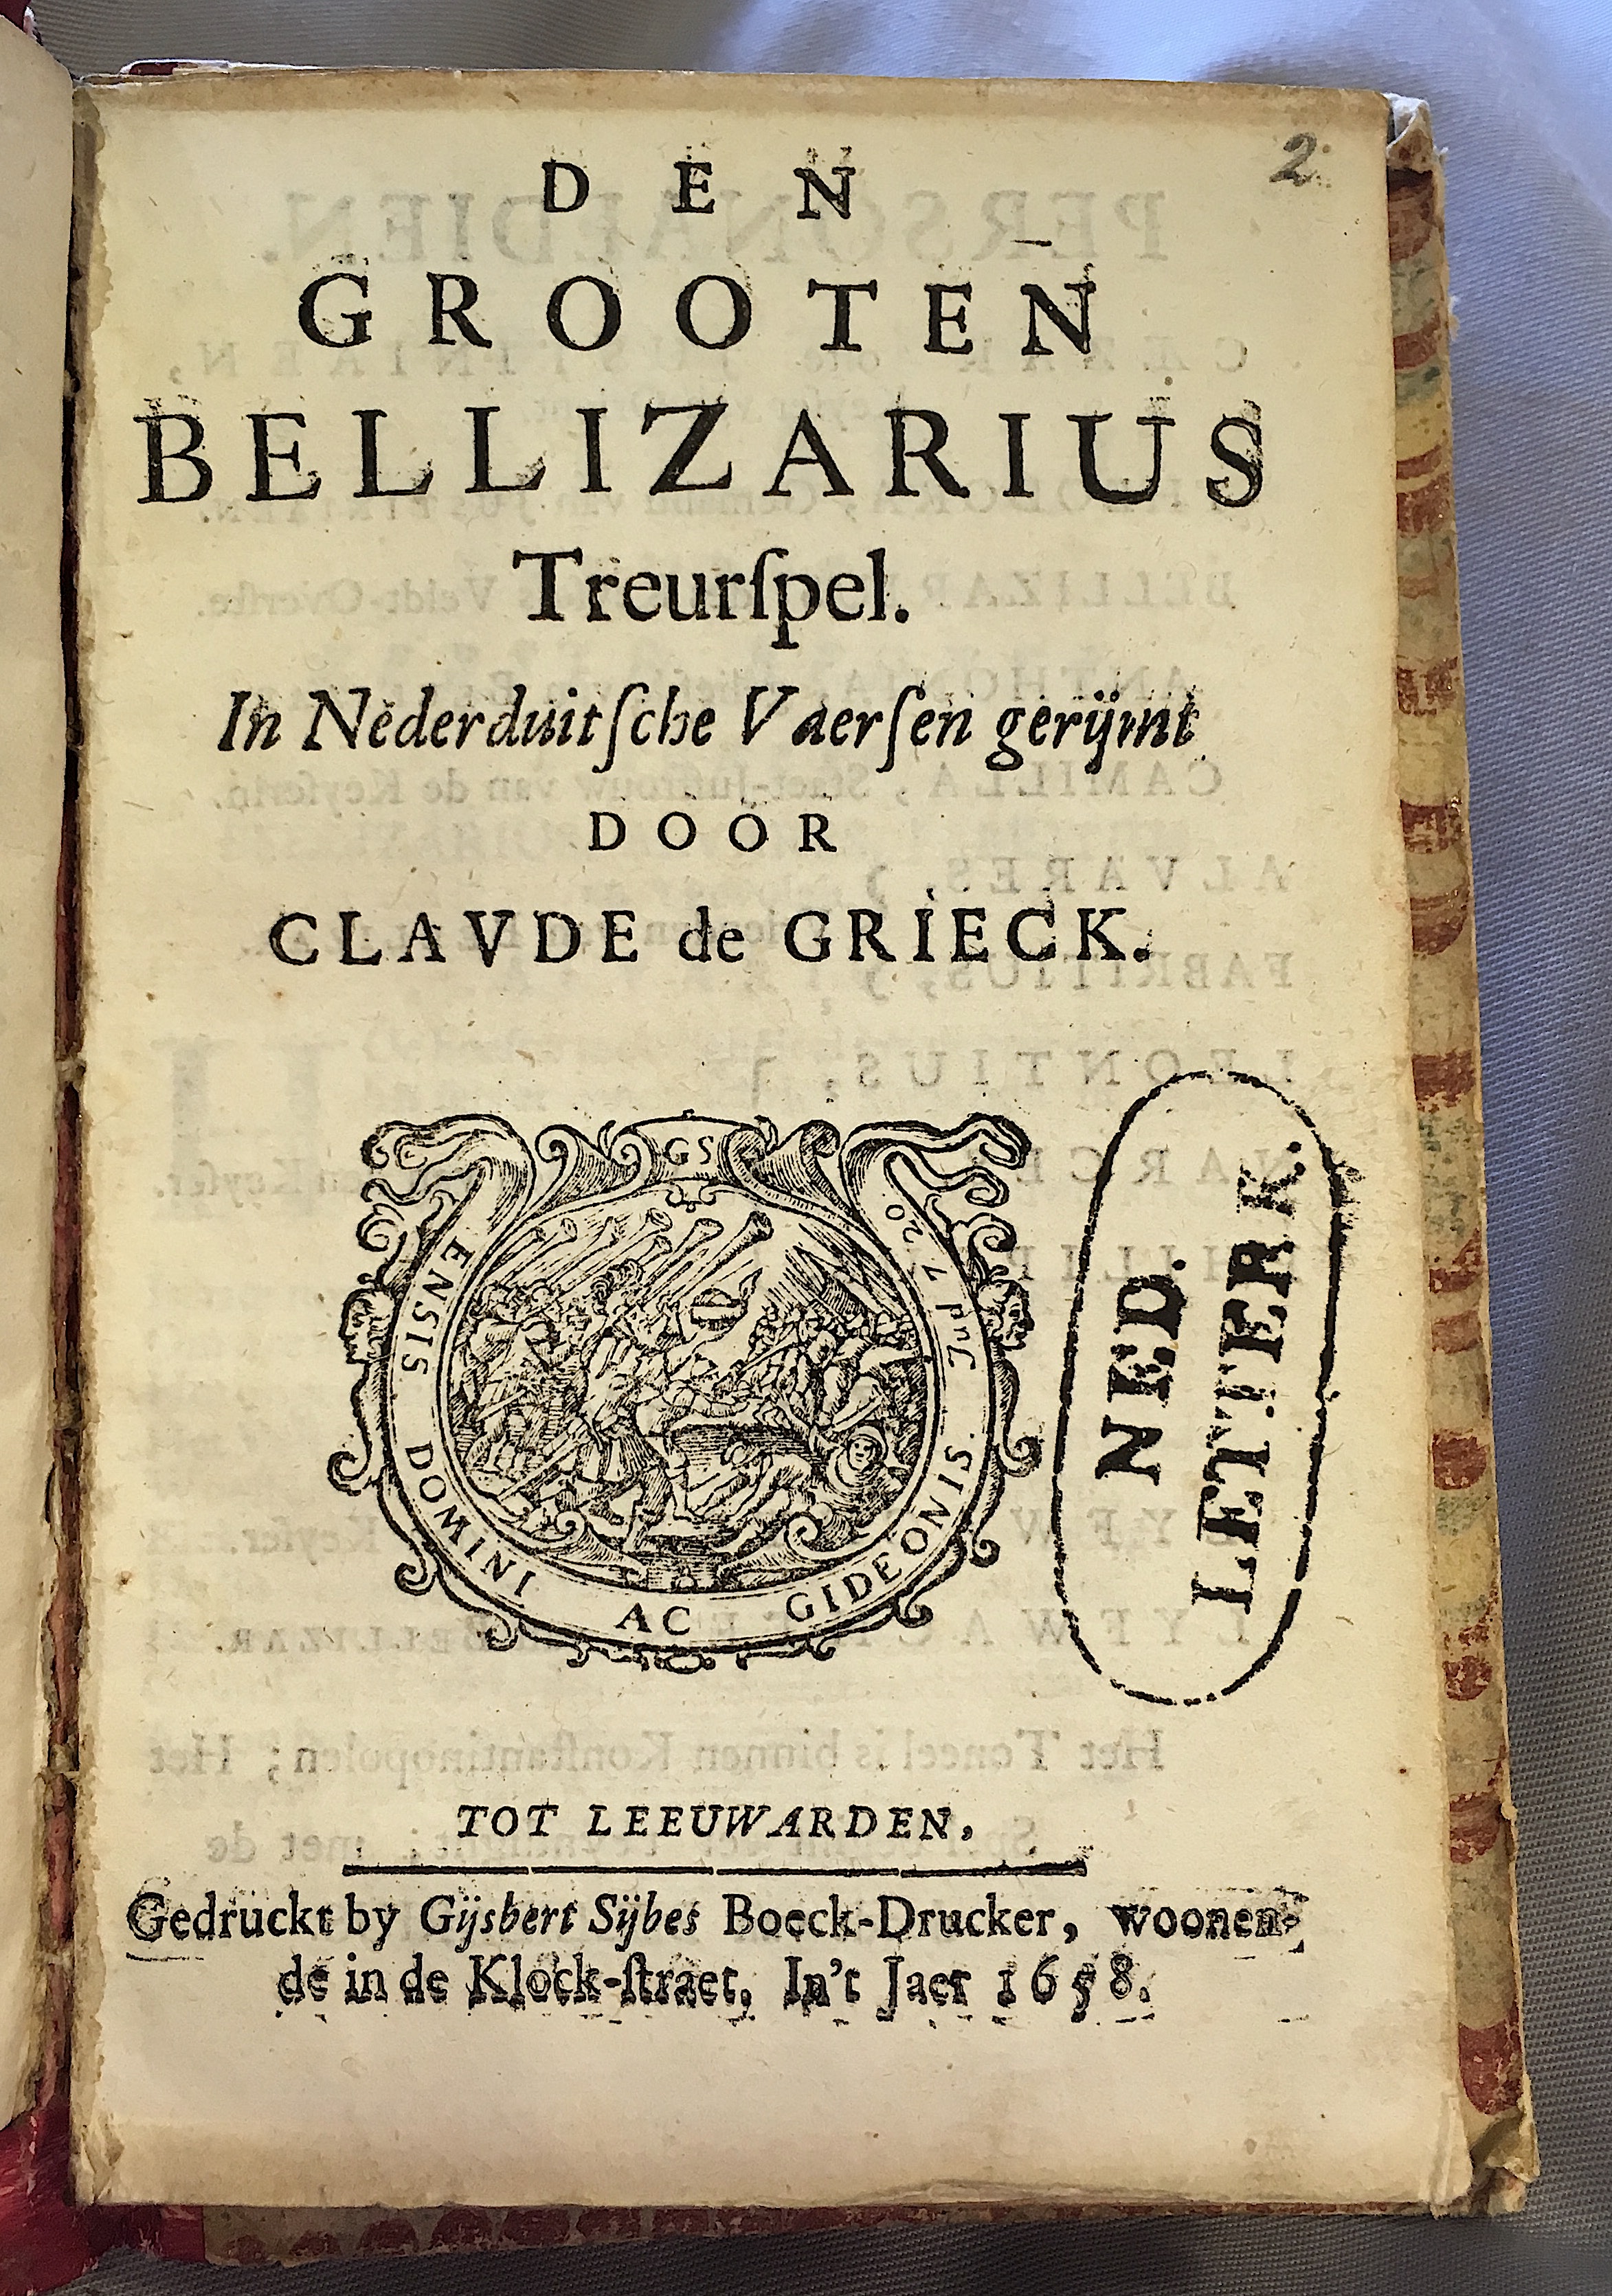 GrieckBellizarius1658p01.jpg